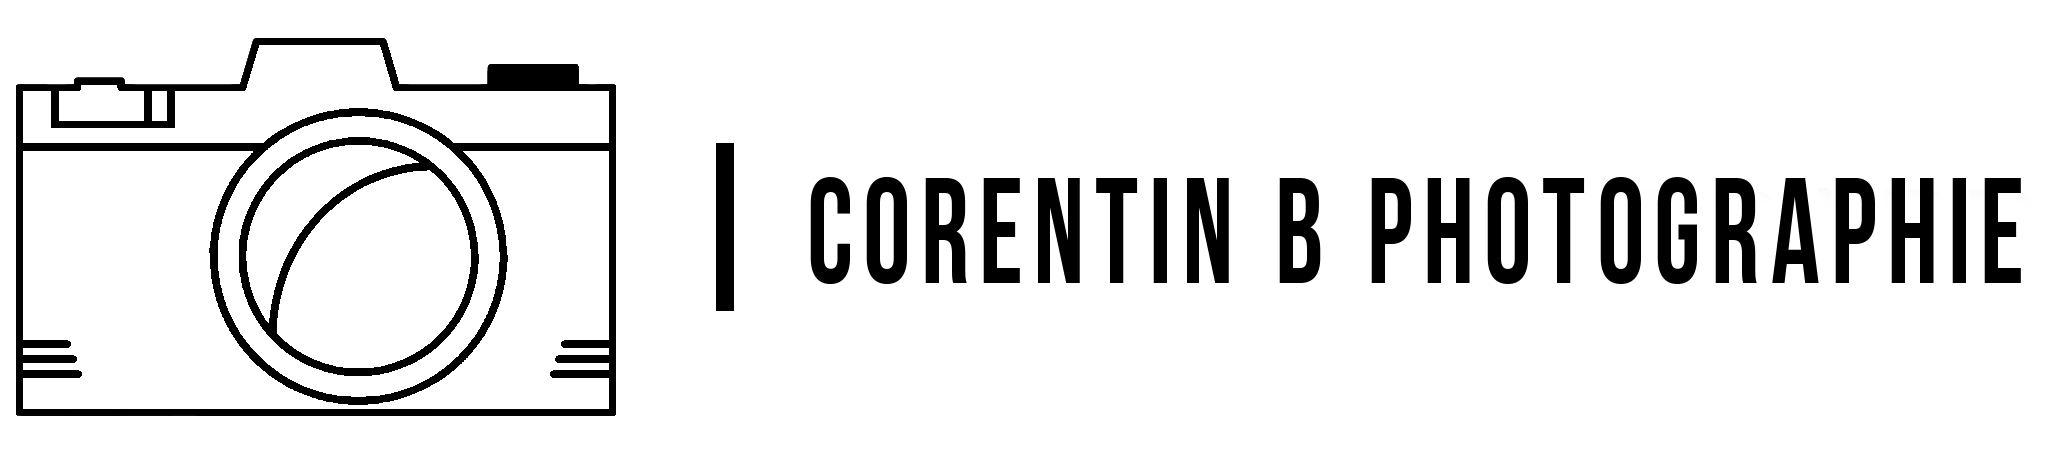 corentin begard